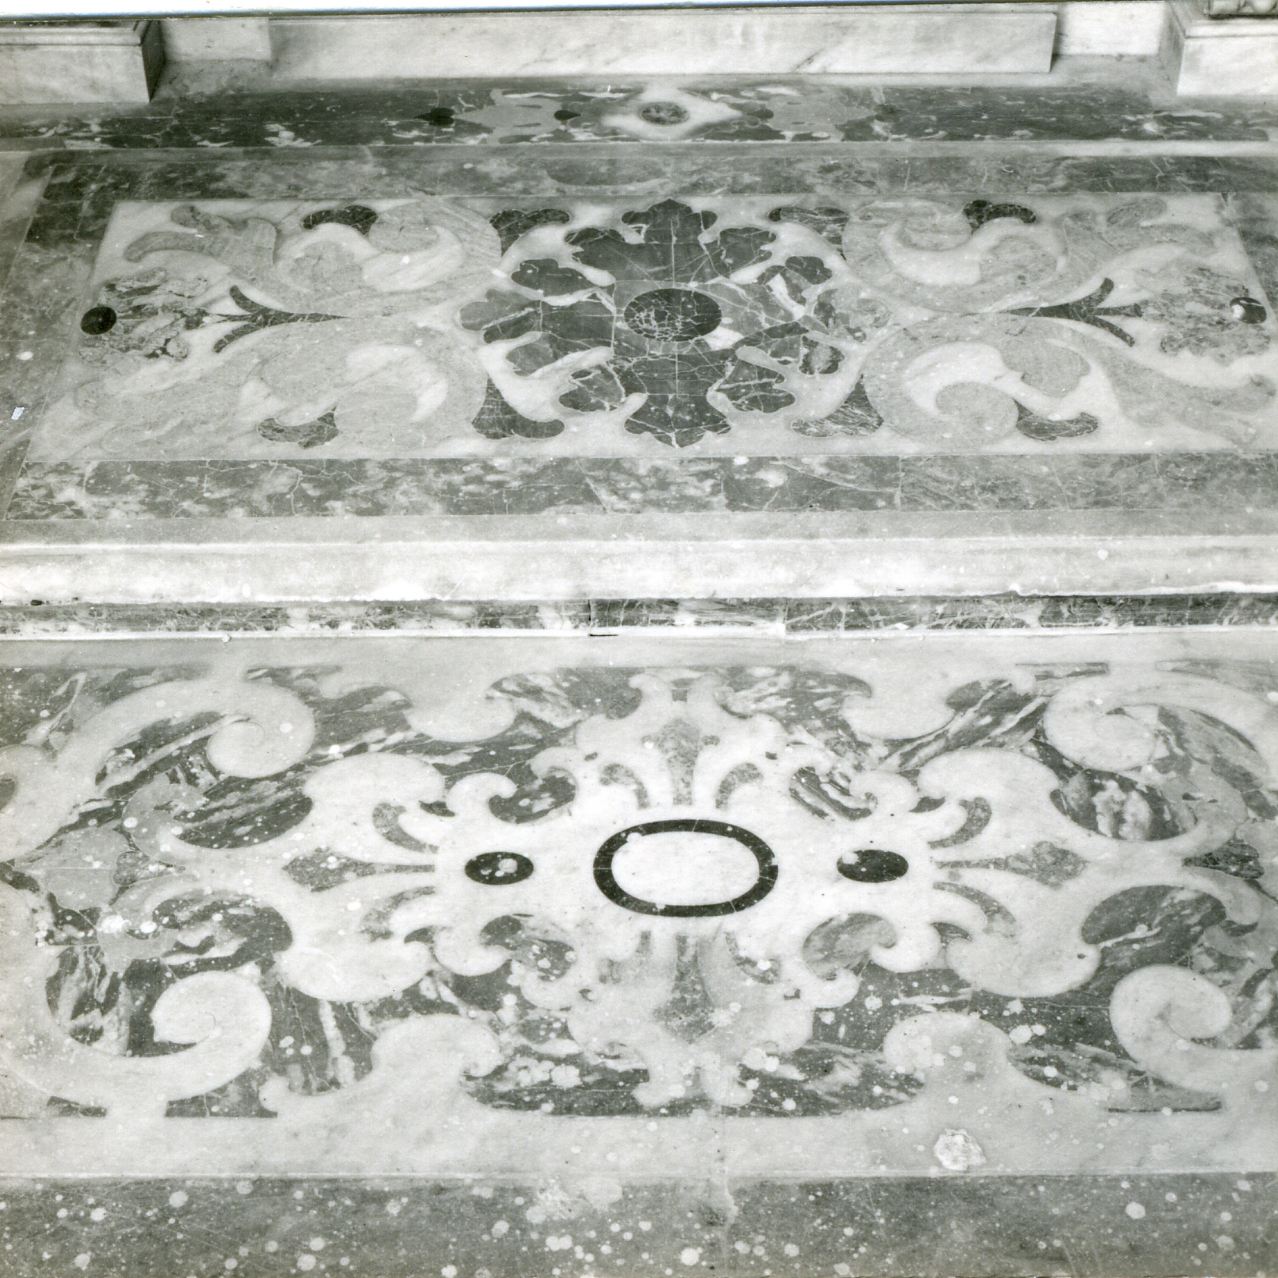 motivi decorativi vegetali (pavimento, serie) - bottega napoletana (inizio sec. XVIII)